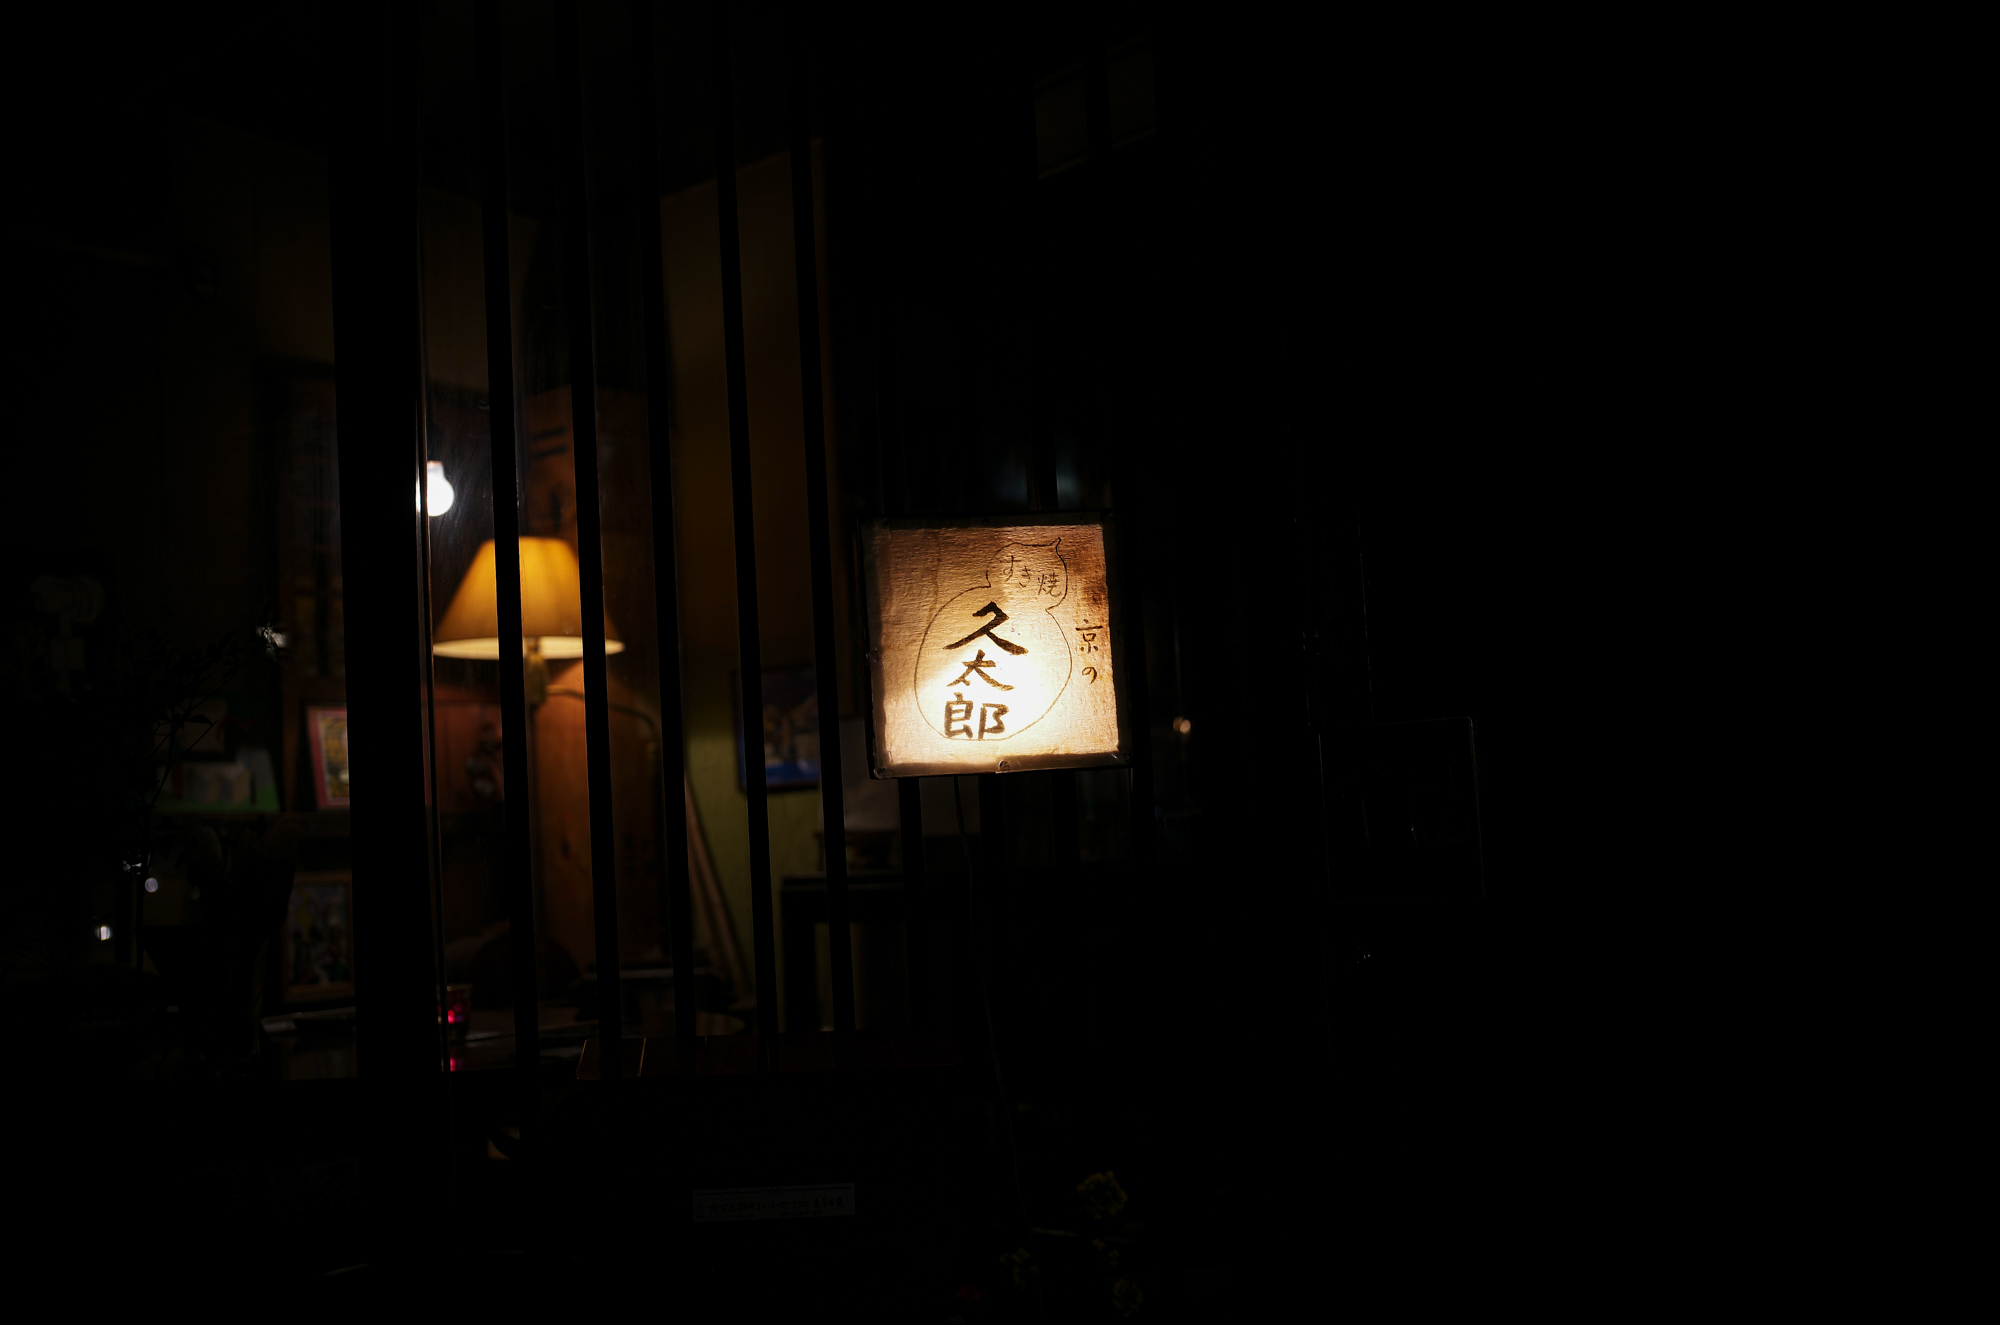 久太郎 （きゅうたろう） 〒106-0046 東京都港区元麻布３丁目１０−１２ すき焼き、しゃぶしゃぶ、日本料理 広称寺 03-3408-1206  アンティーク家具が飾られたジャズが流れる店内で、京野菜を使ったおばんざい、すき焼きや鴨なべのコースがいただける和食レストラン。LEICA ライカ APO SUMMICRON 35アポズミクロン 愛知 名古屋 Alto e Diritto altoediritto アルトエデリット